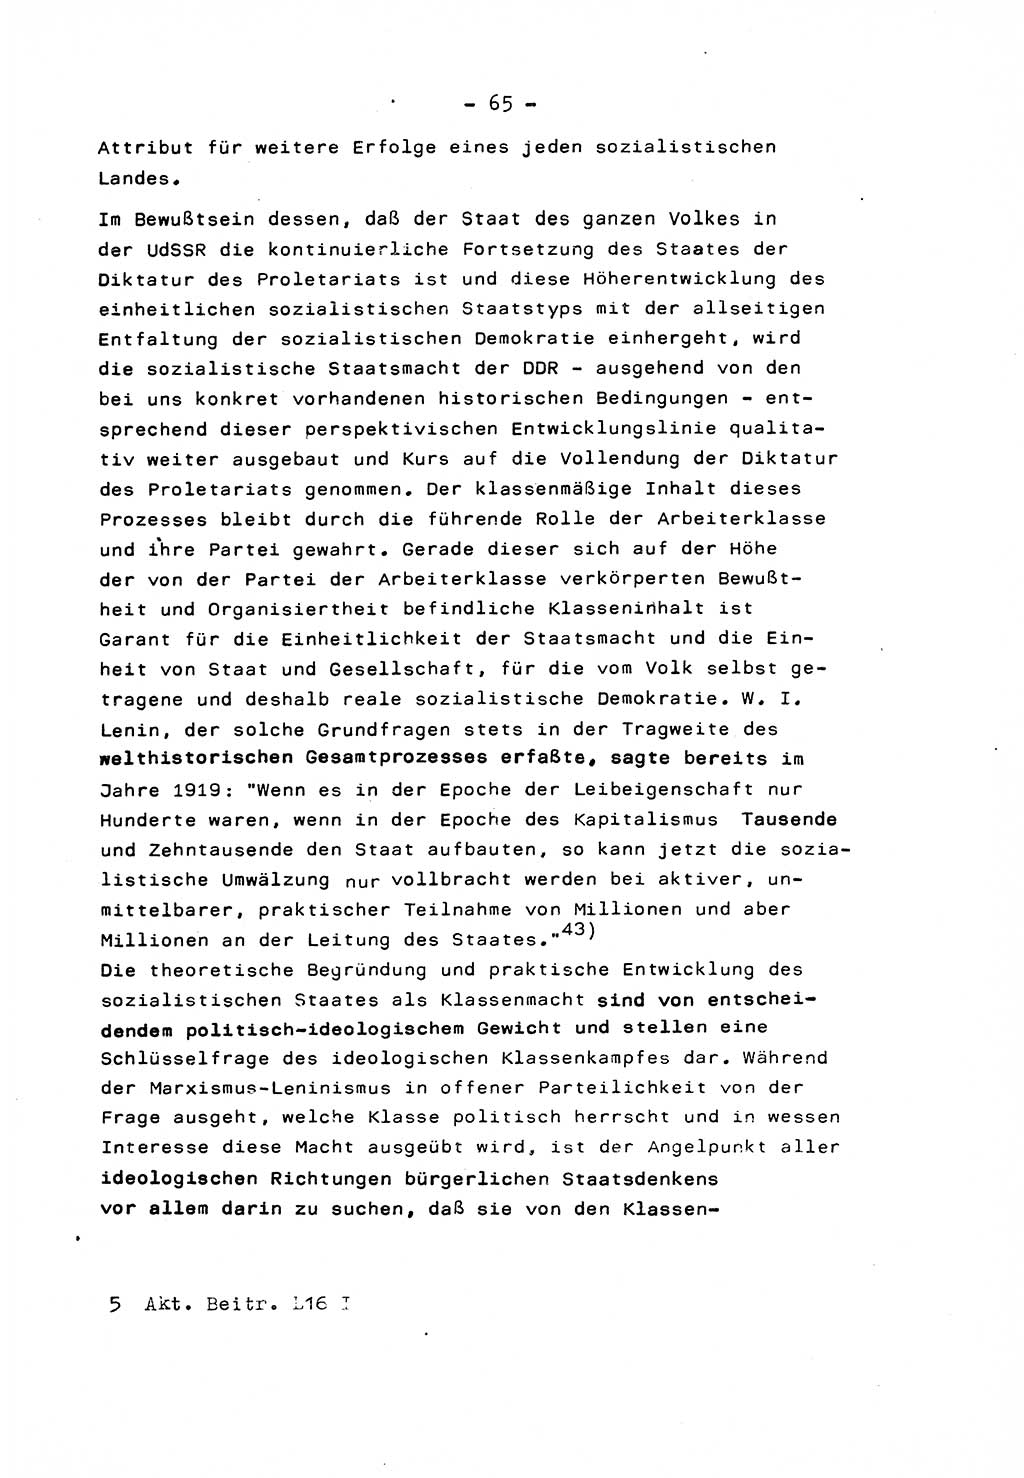 Marxistisch-leninistische Staats- und Rechtstheorie [Deutsche Demokratische Republik (DDR)] 1975, Seite 65 (ML St.-R.-Th. DDR 1975, S. 65)